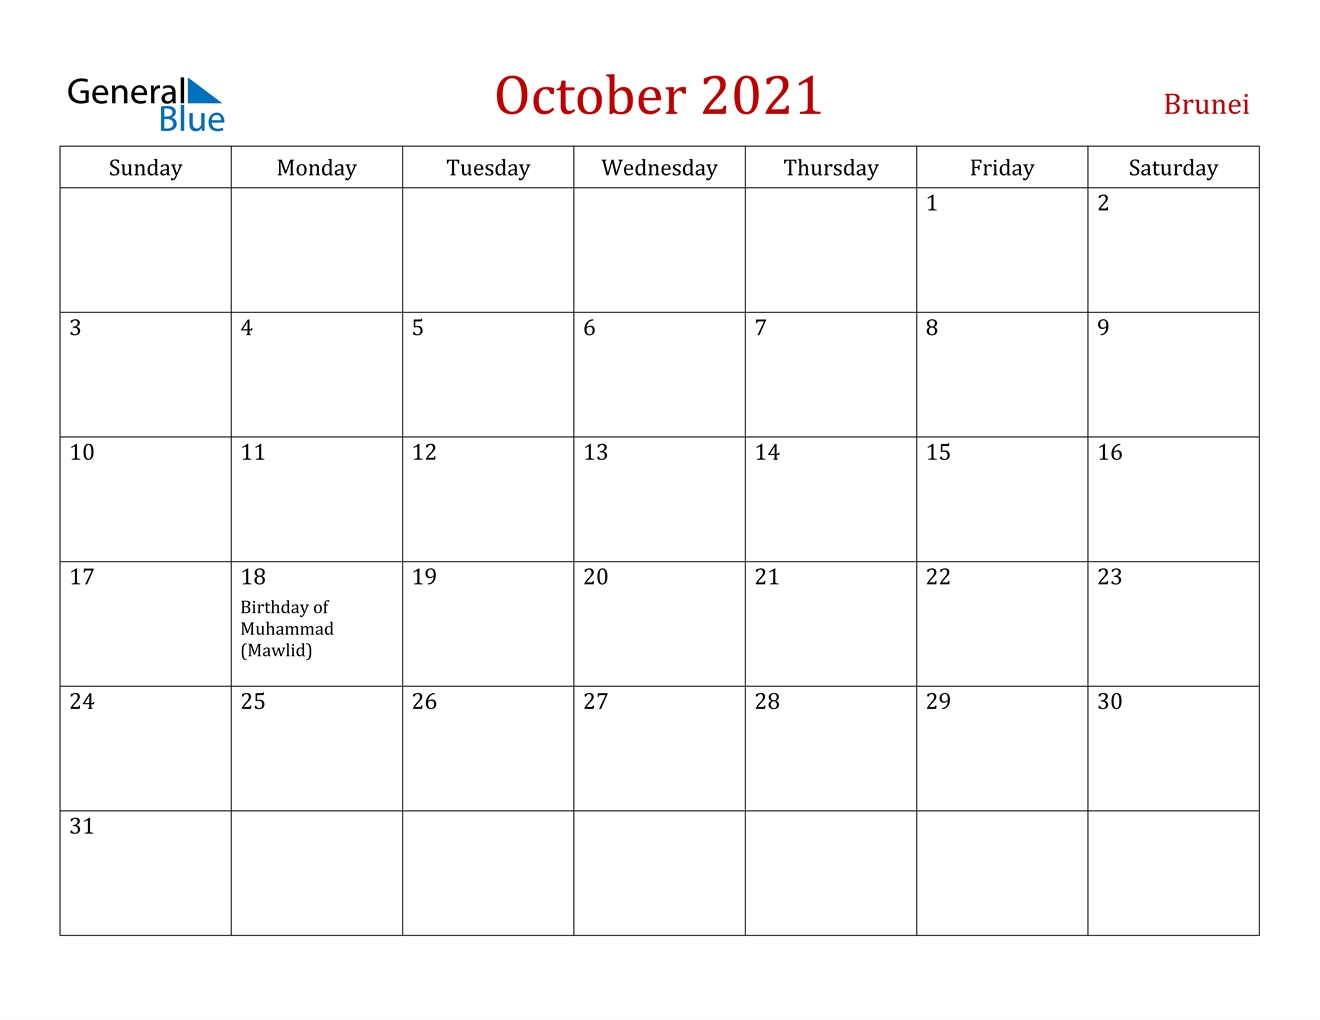 October 2021 Calendar - Brunei 2021 Calendar Of October